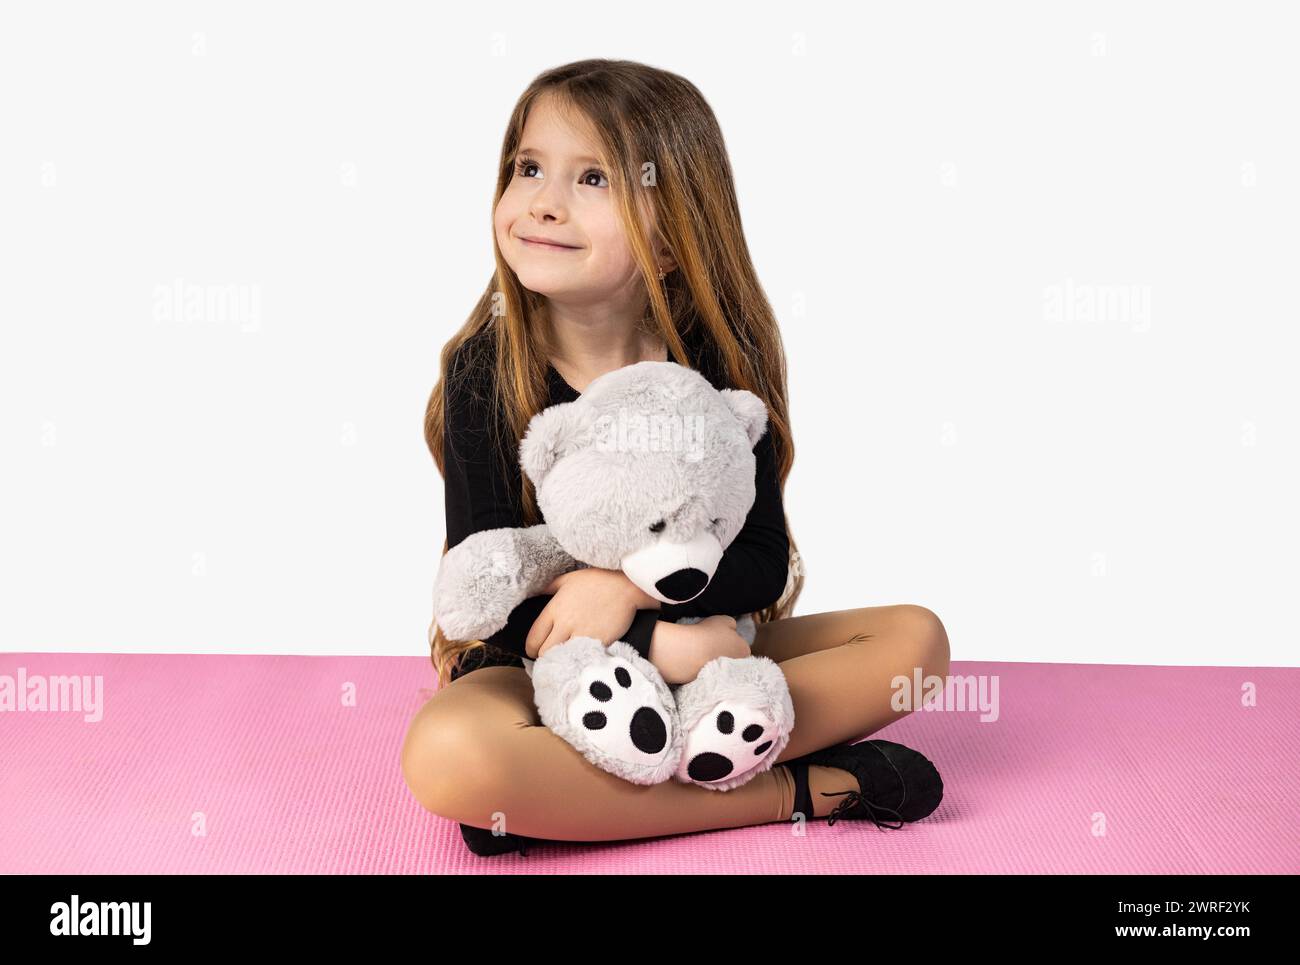 Niña sonriente vestida con ropa negra de gimnasio, sosteniendo un oso de peluche gris en sus brazos, sentada en una esterilla de yoga rosa, aislada en un backgr de estudio blanco Foto de stock